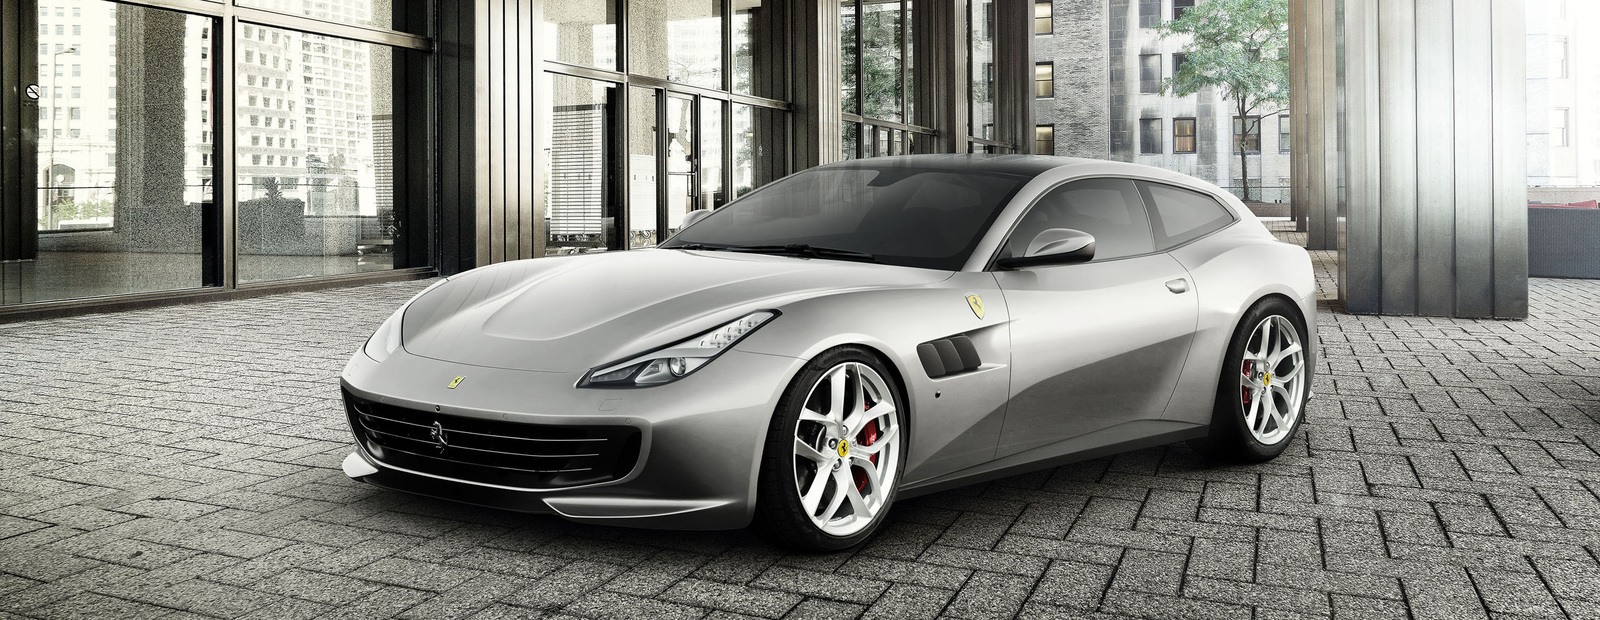 У Ferrari впервые появился четырехместный суперкар с турбомотором